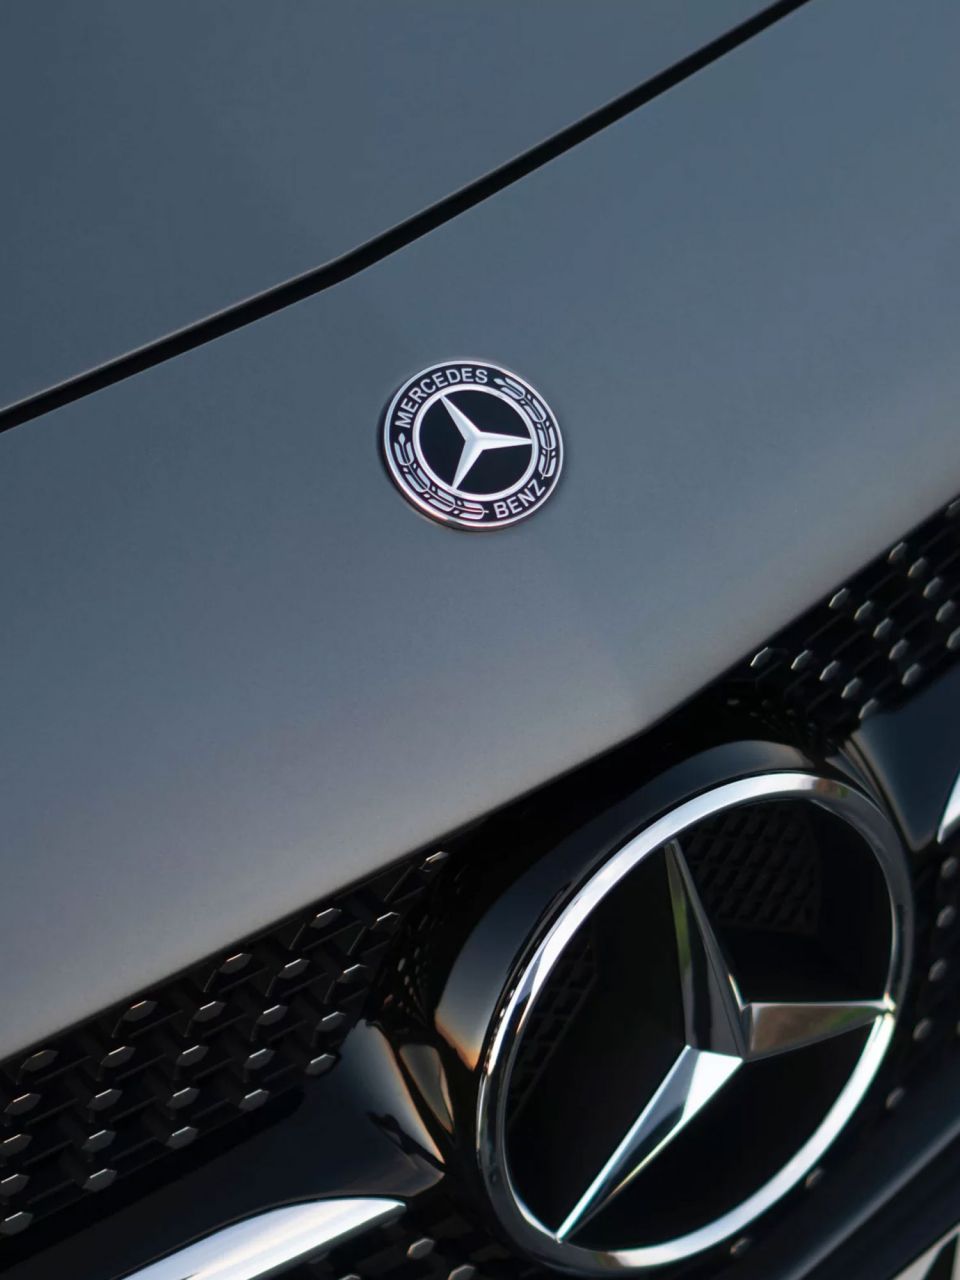 Mercedes Benz car up close 